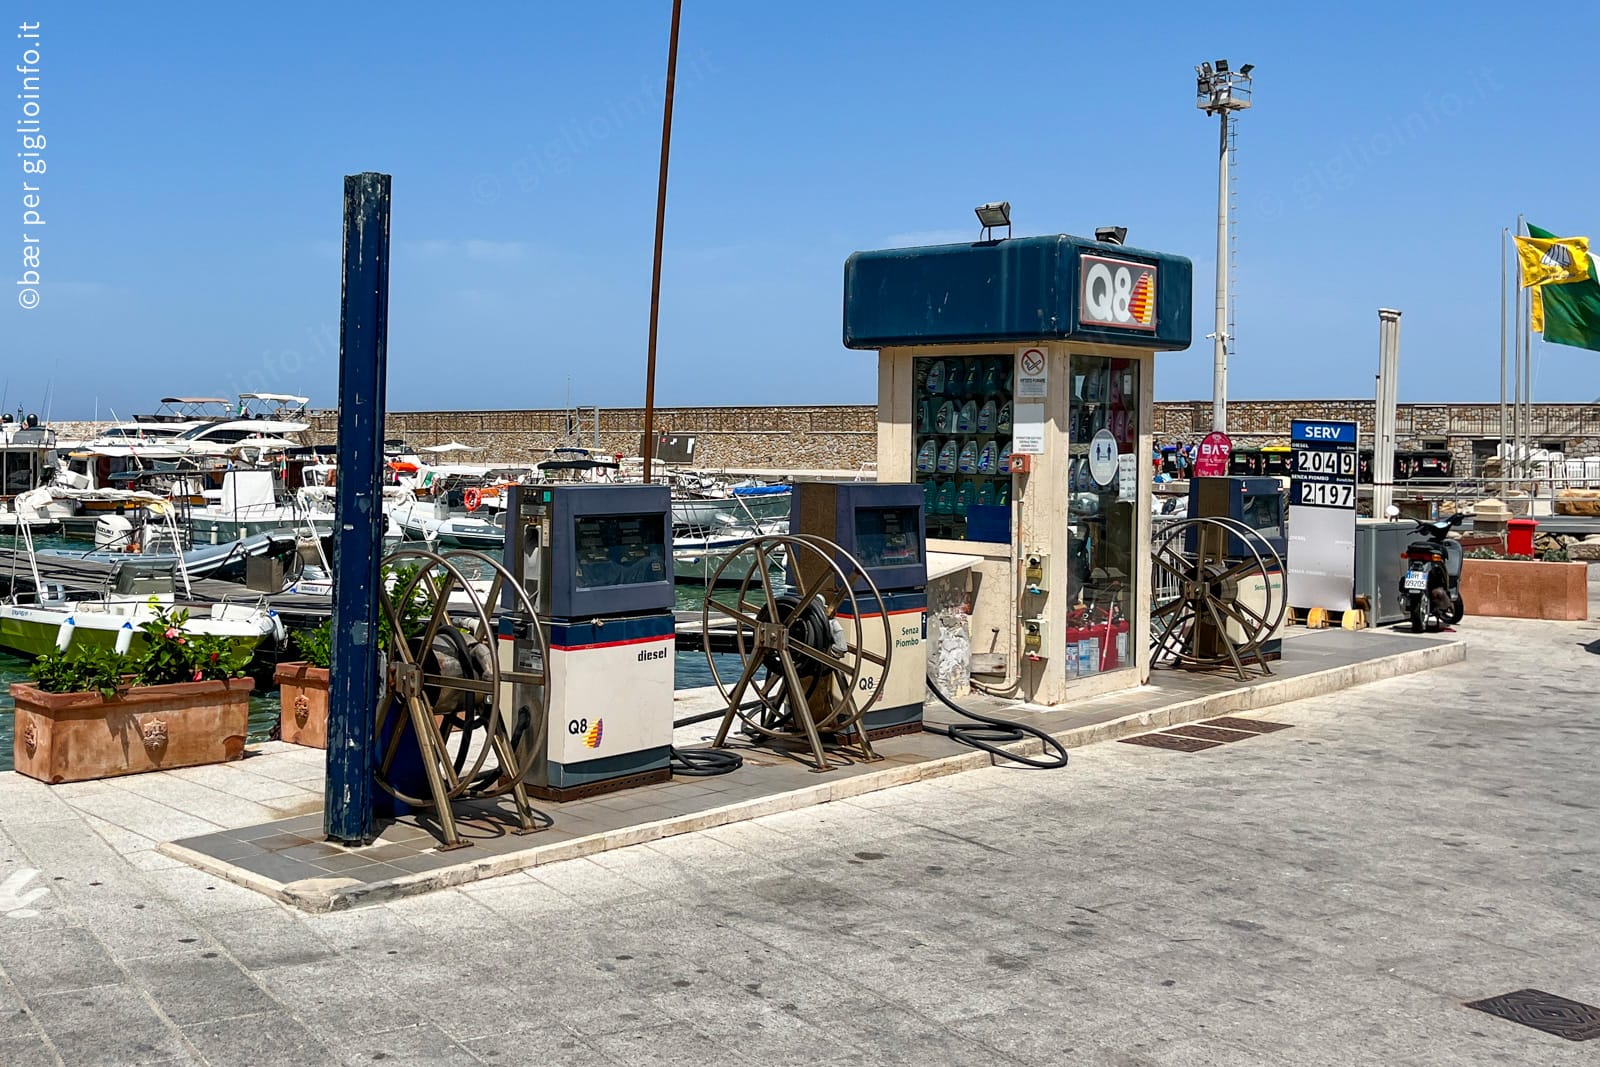 Benzinaio - Stazione di Servizio - Q8 a Giglio Porto, Isola del Giglio